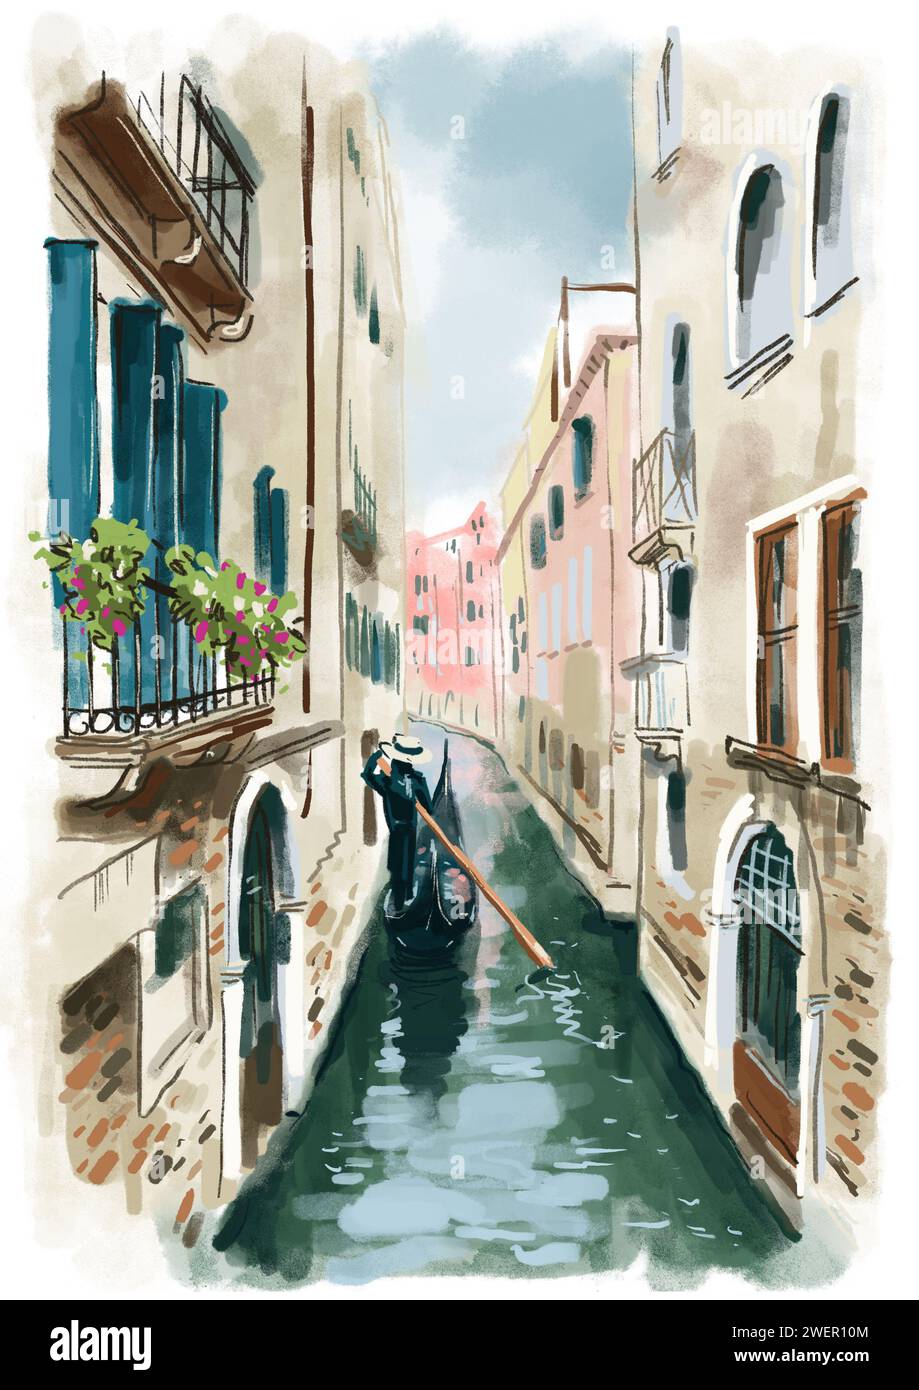 Illustration aquarelle au format JPEG, qui représente un canal avec des bâtiments à Venise en Italie, le long duquel flotte une gondole Banque D'Images